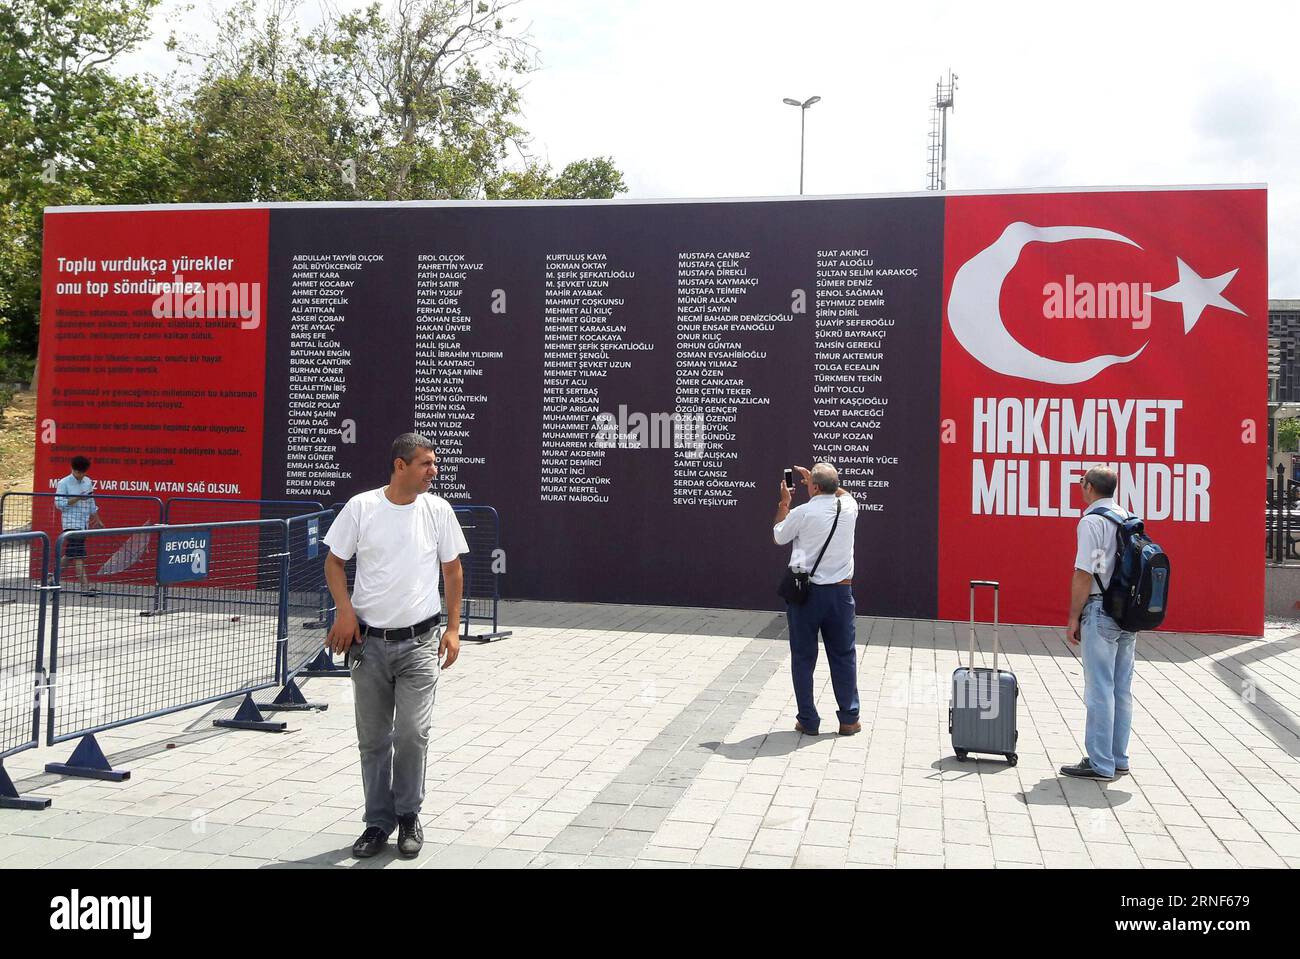 (160720) -- ISTANBUL, 20 luglio 2016 -- foto scattata il 20 luglio 2016 mostra l'elenco delle vittime durante il fallito colpo di stato militare della scorsa settimana a Istanbul, in Turchia. Mercoledì si è tenuta una cerimonia nel cuore di Istanbul per commemorare le 242 persone che hanno perso la vita durante il fallito colpo di stato militare della scorsa settimana. TURCHIA-ISTANBUL-VICTIMS ONORATO Cihan PUBLICATIONxNOTxINxCHN 160720 Istanbul 20 luglio 2016 la foto scattata IL 20 luglio 2016 mostra la lista delle vittime durante il colpo di stato militare fallito della settimana di carico a Istanbul in Turchia una cerimonia What Hero IL mercoledì nel cuore di Istanbul per commemorare la celebrazione del 242 Foto Stock